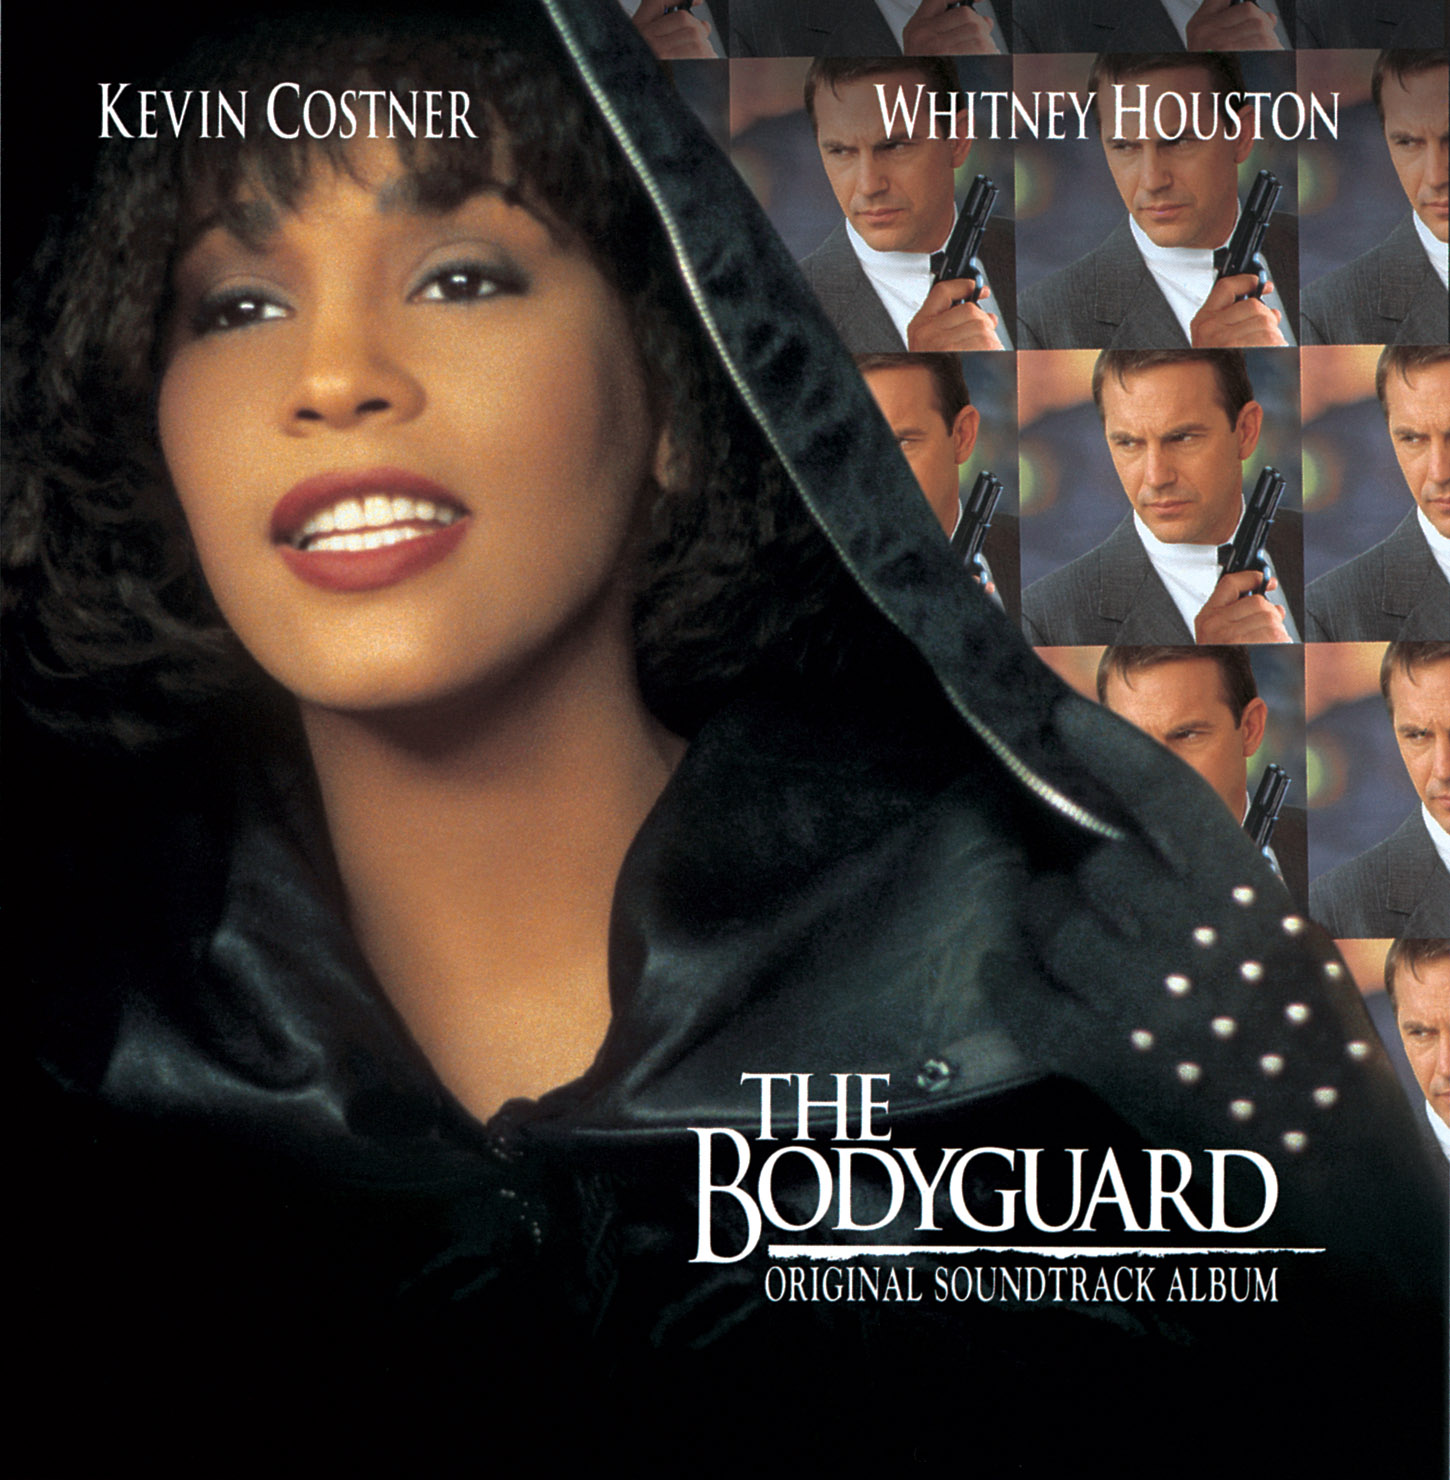 Whitney Houstons 'The Bodyguard' feiert 30. Jubiläum und ich verlose Vinyl des erfolgreichsten Soundtracks aller Zeiten